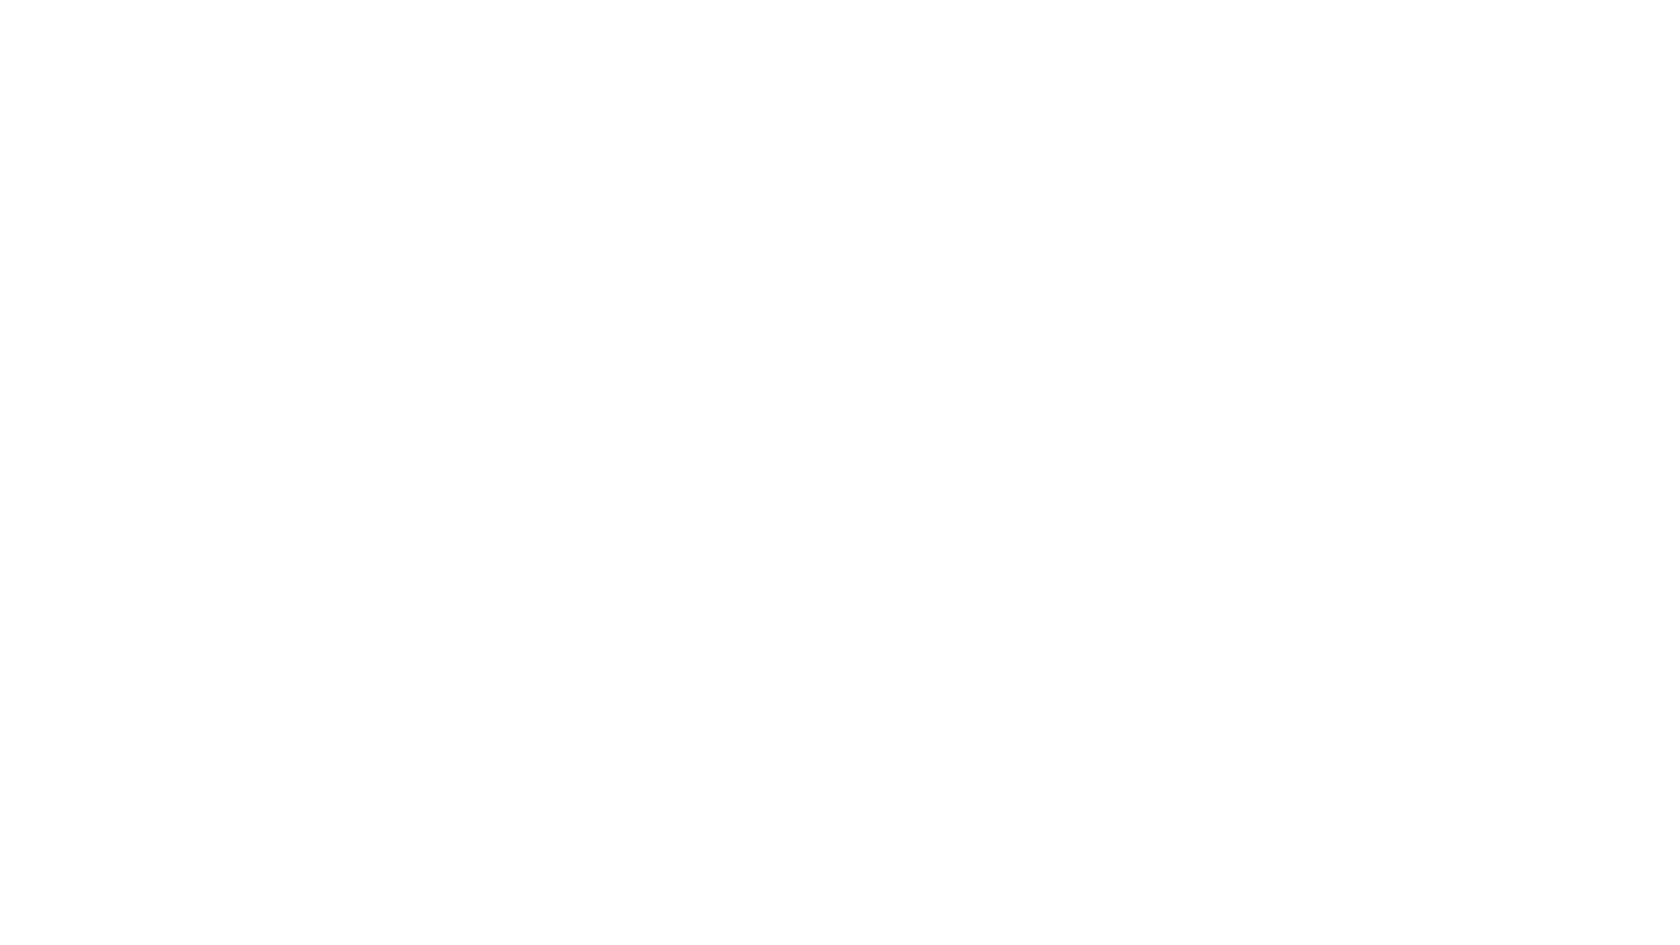 Вологодская роспись (Северная Хохлома). Фоновое письмо. Бумажная тарелка, темперные краски